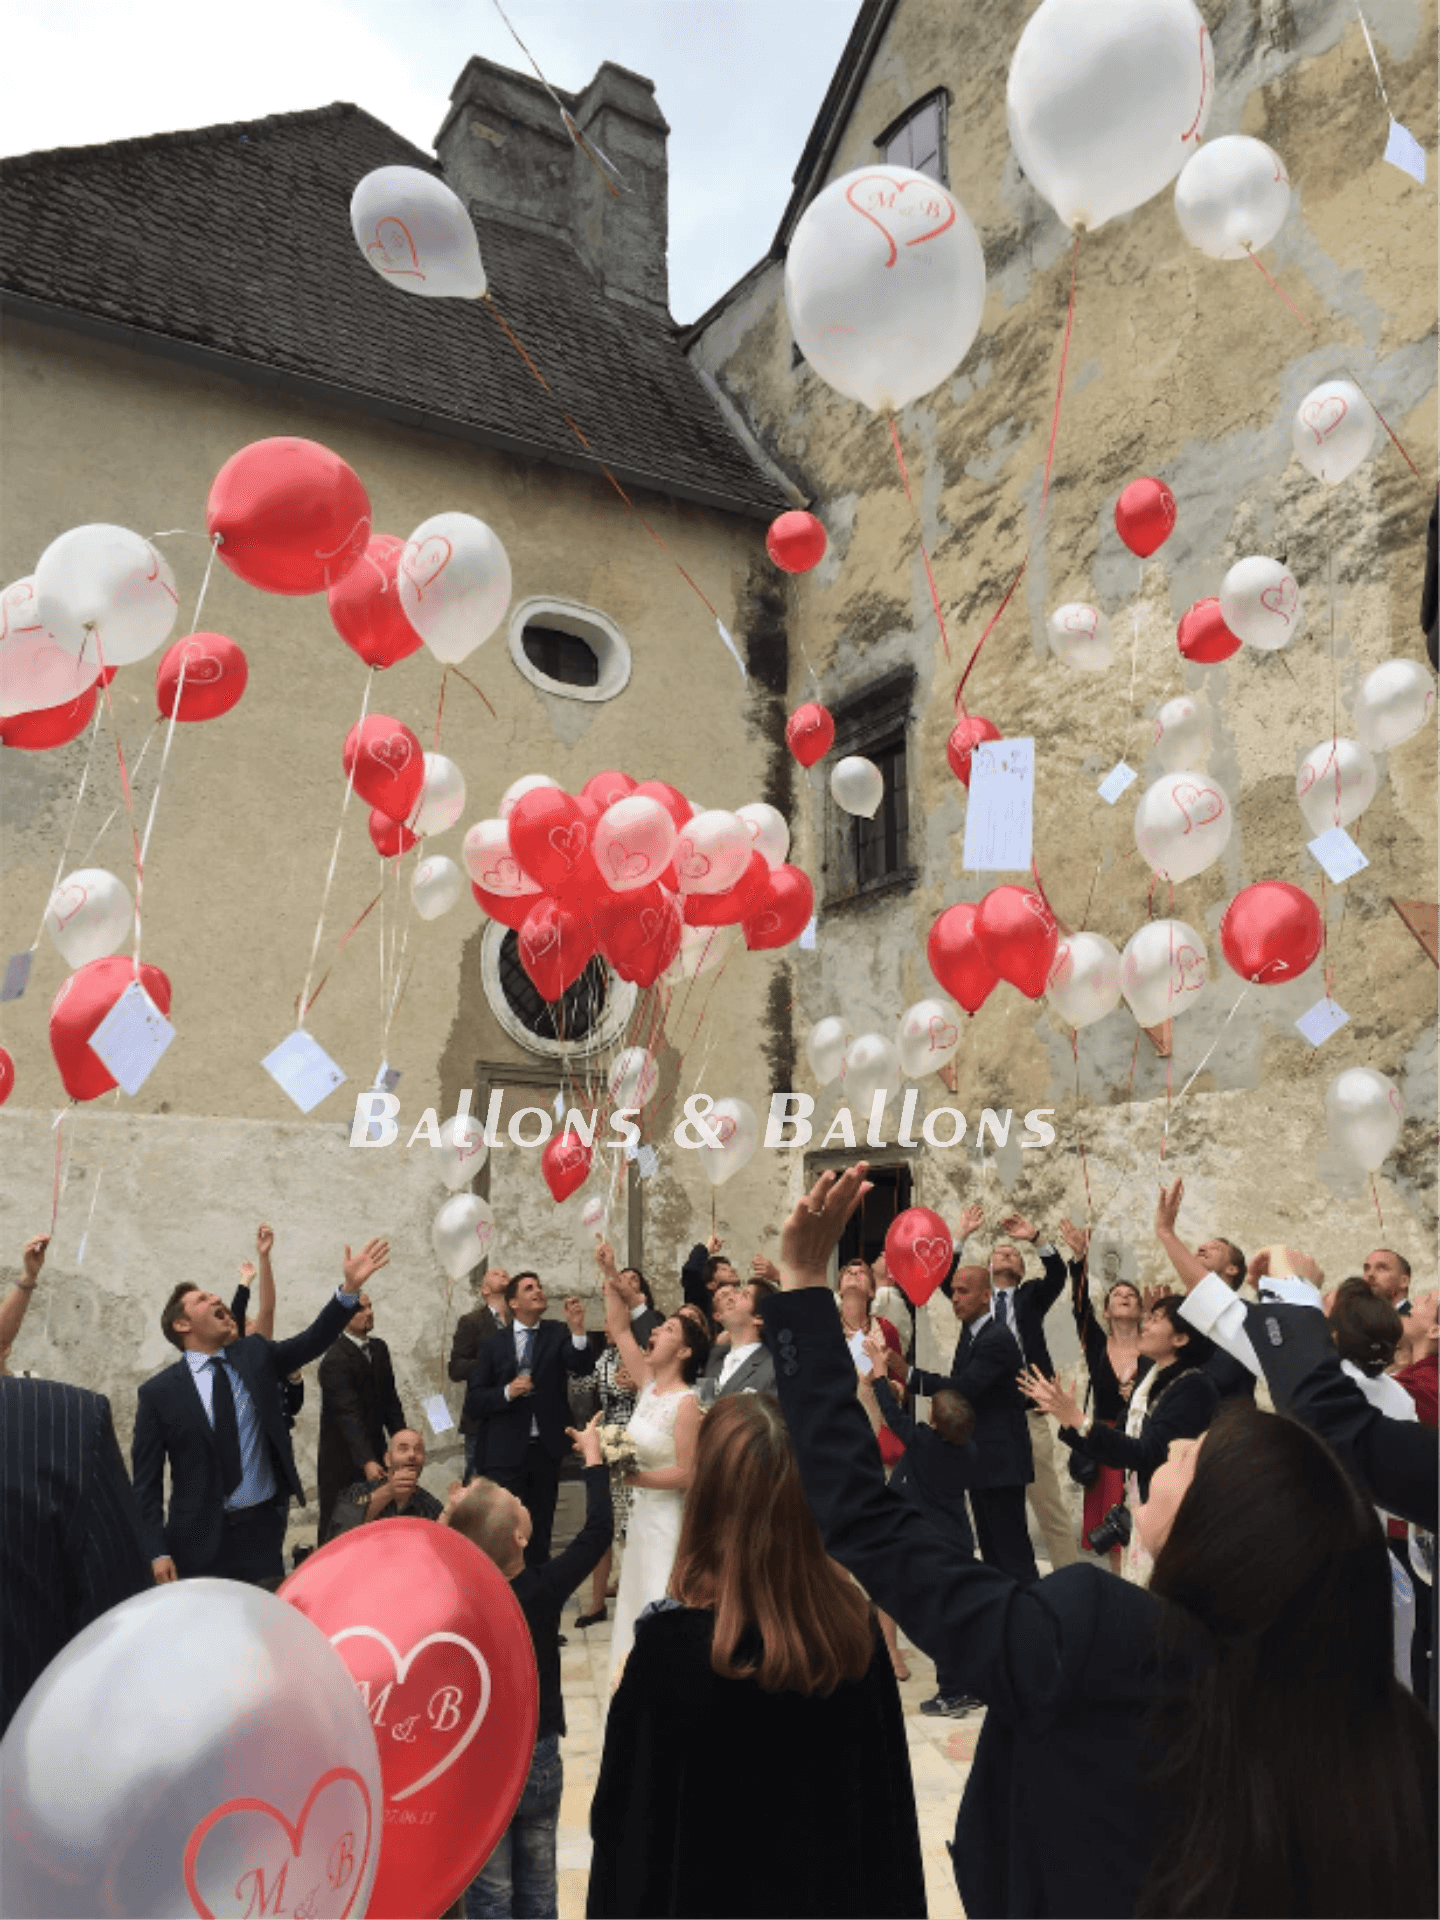 Eine Gruppe von Menschen feiert ihre Hochzeit und gibt Ballons aus.